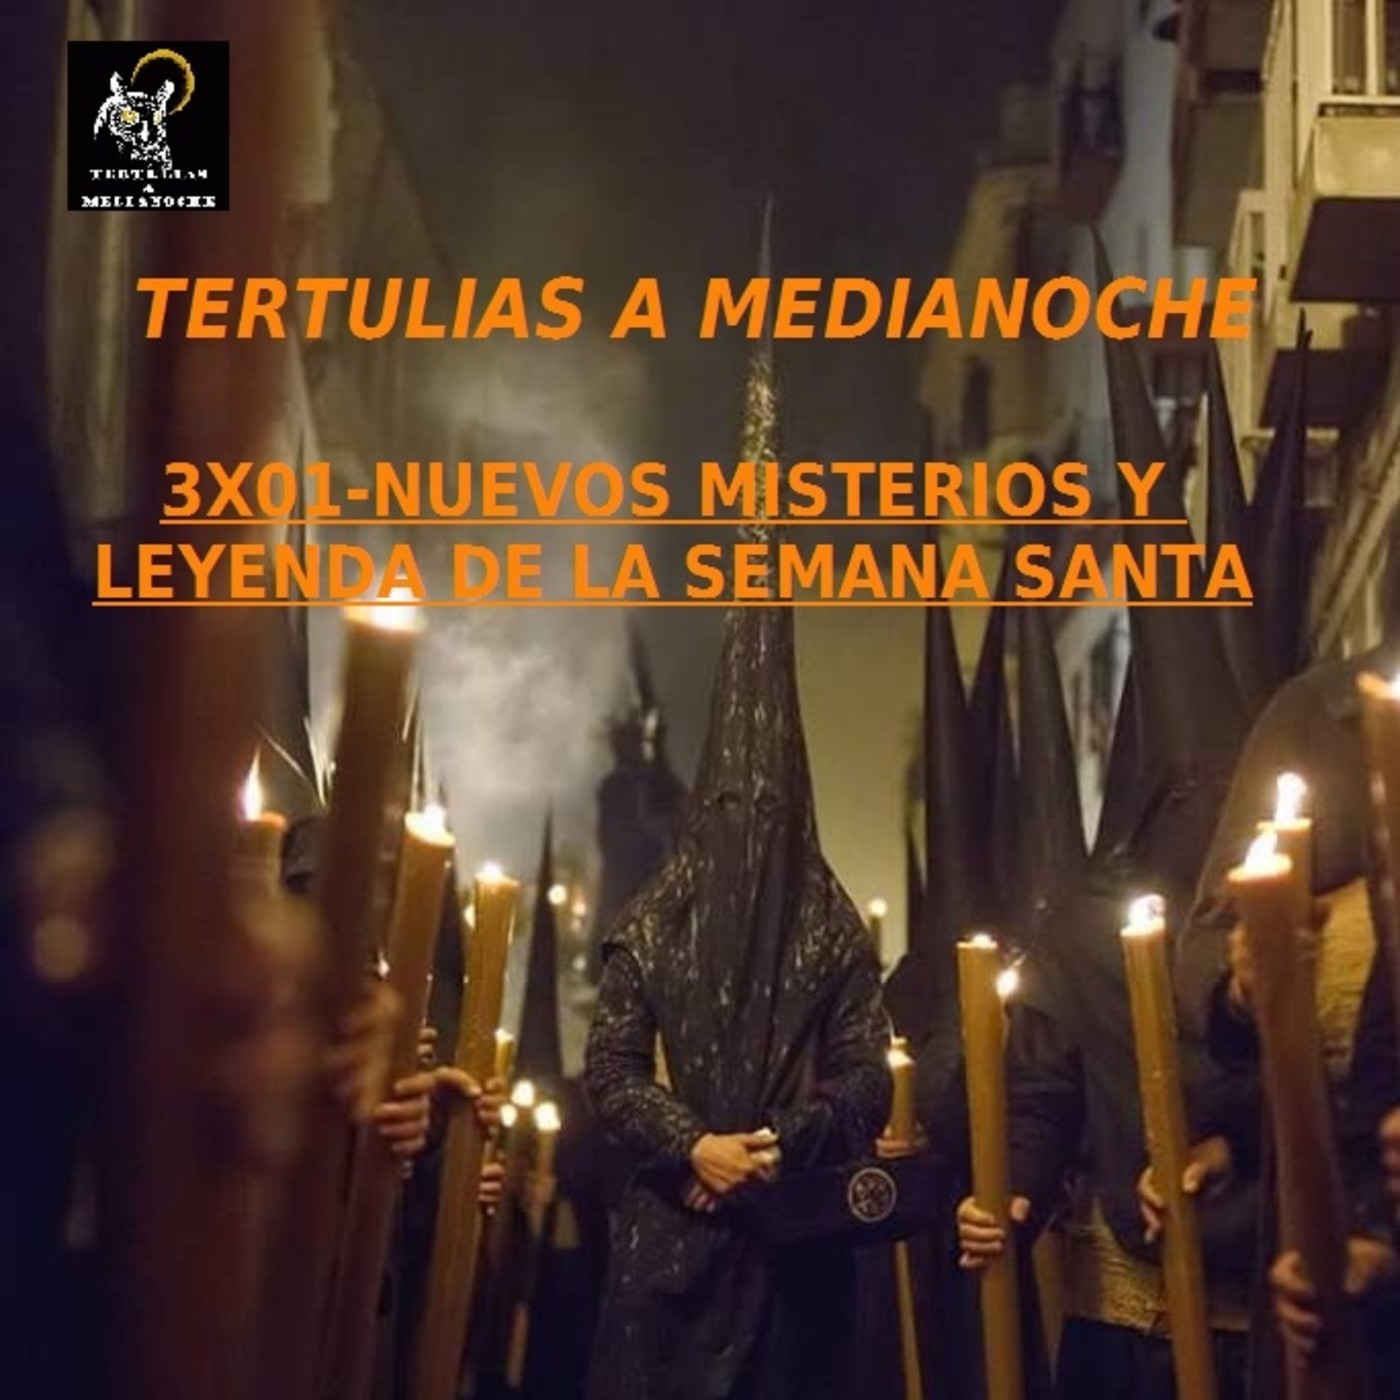 NUEVOS MISTERIOS Y LEYENDAS DE LA SEMANA SANTA 27/03/2017 P03X01- Tertulias a Medianoche